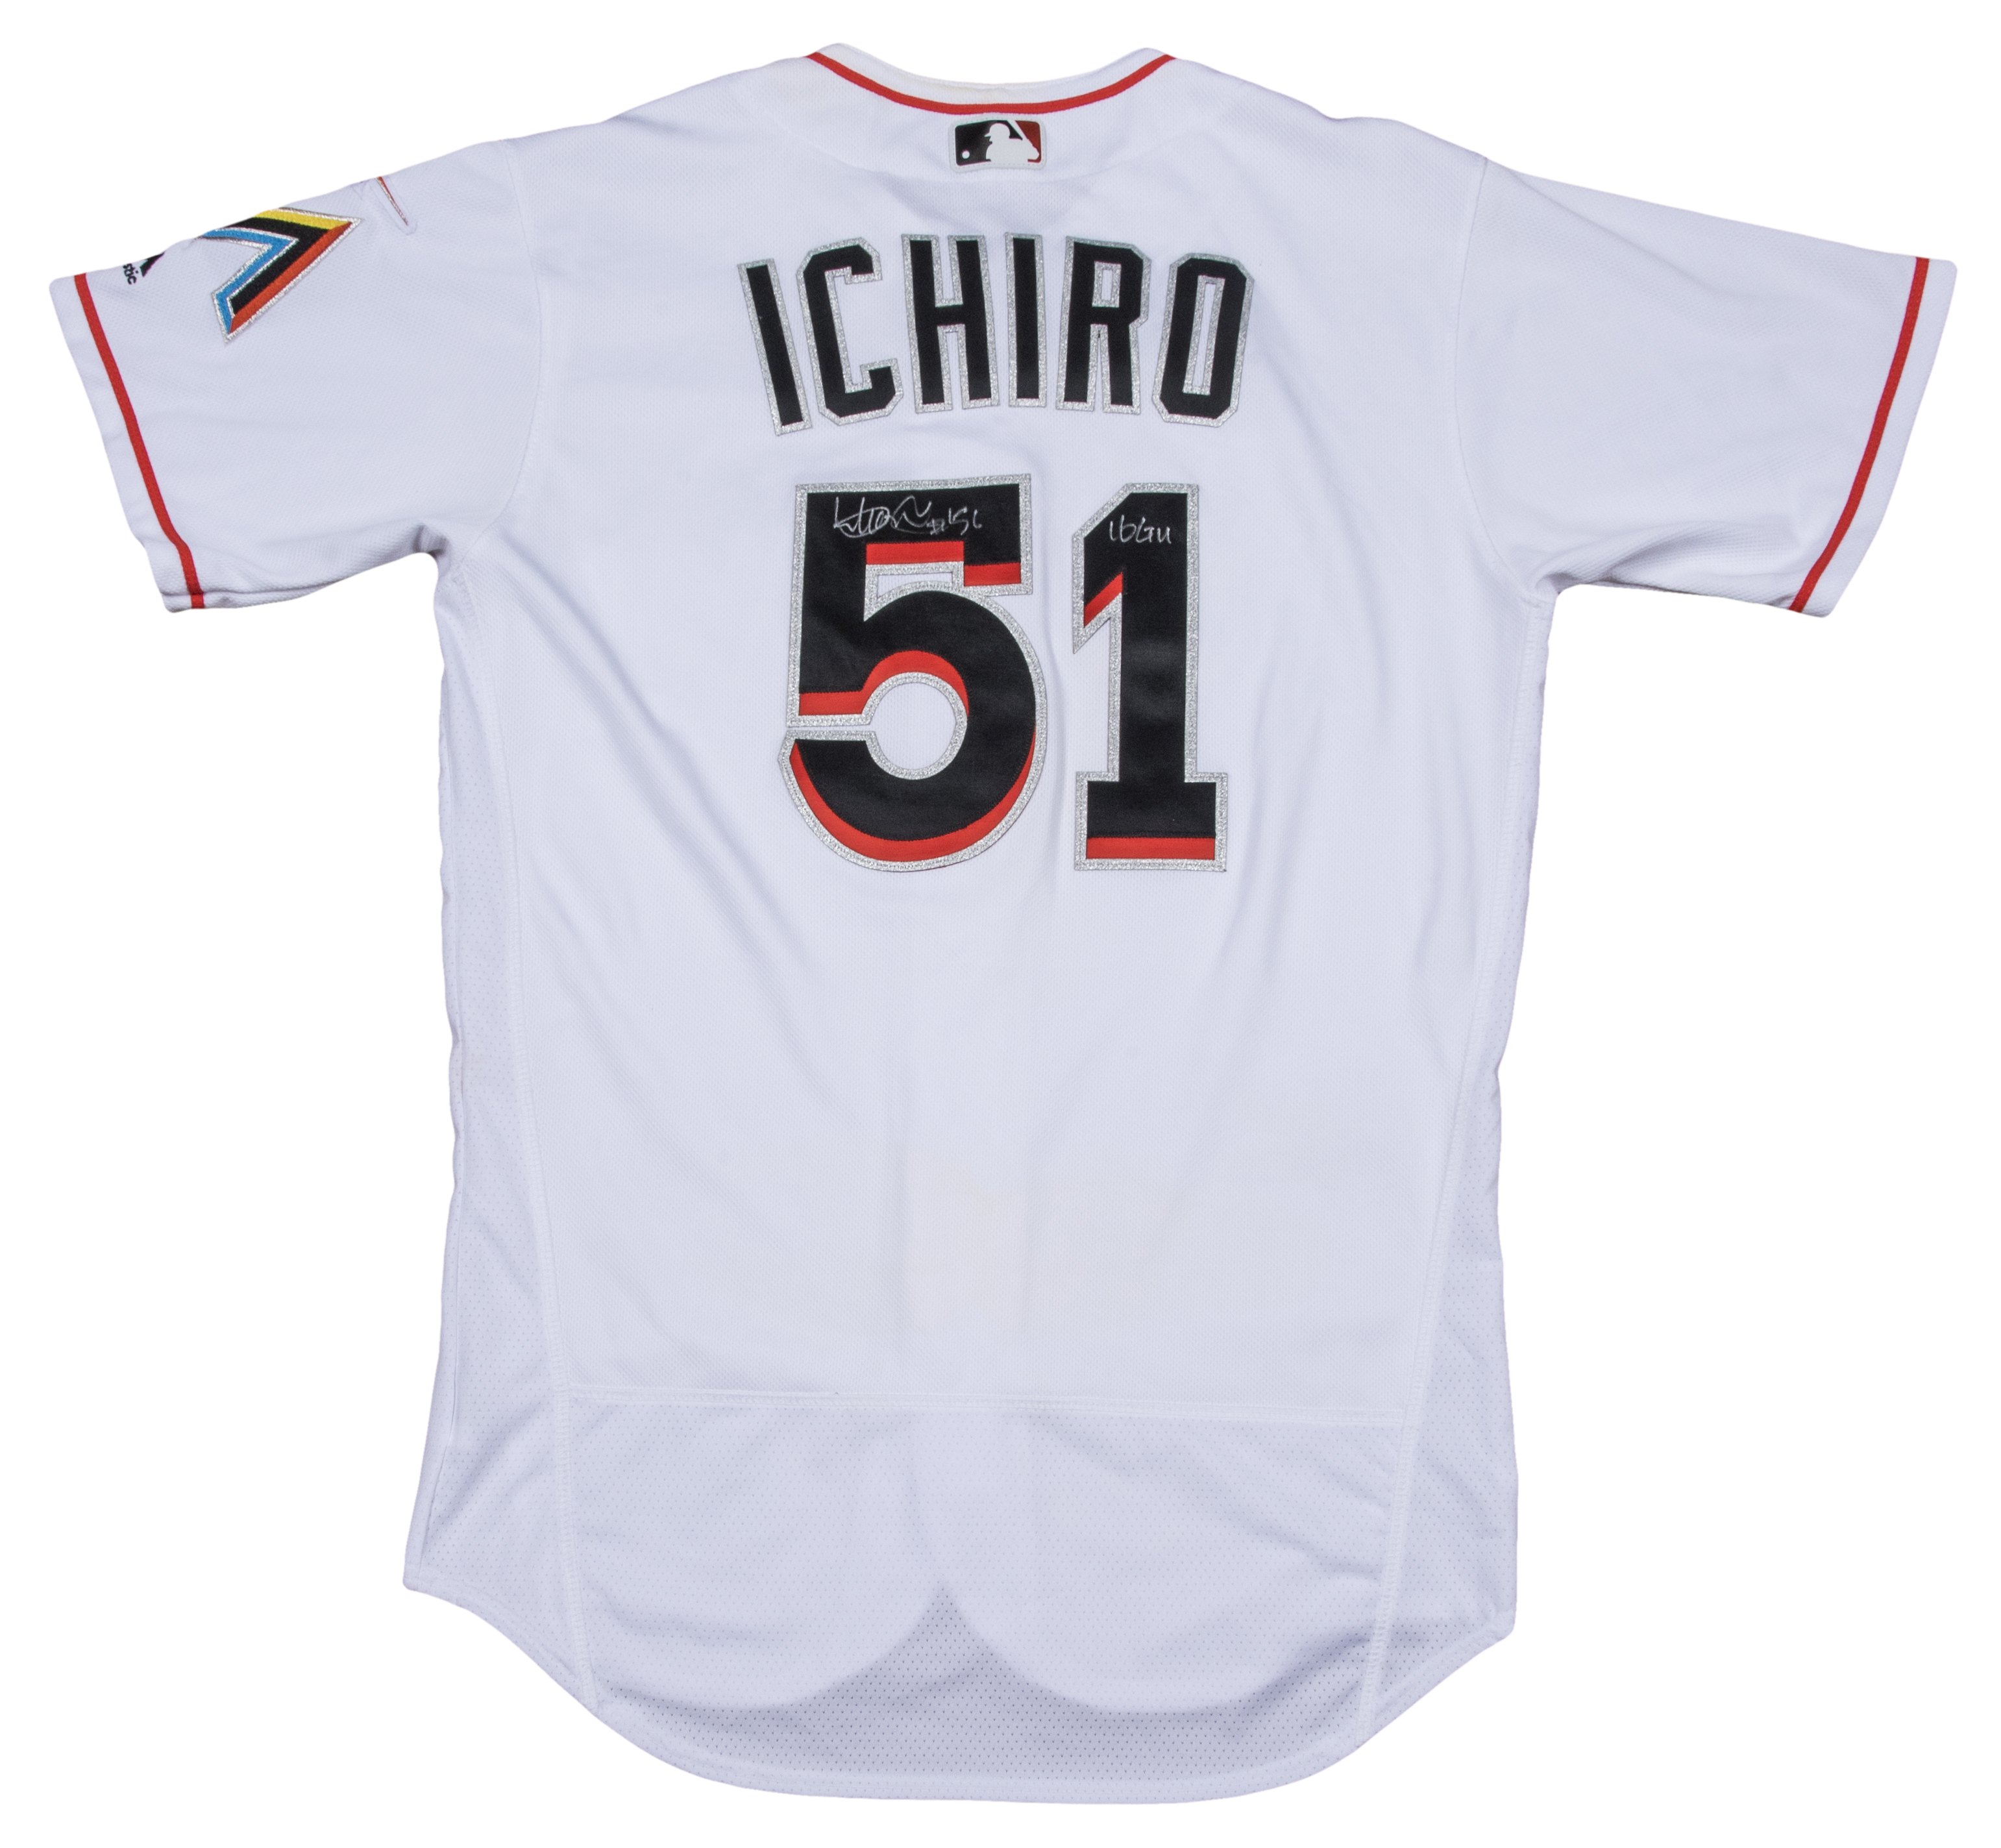 ichiro signed jersey